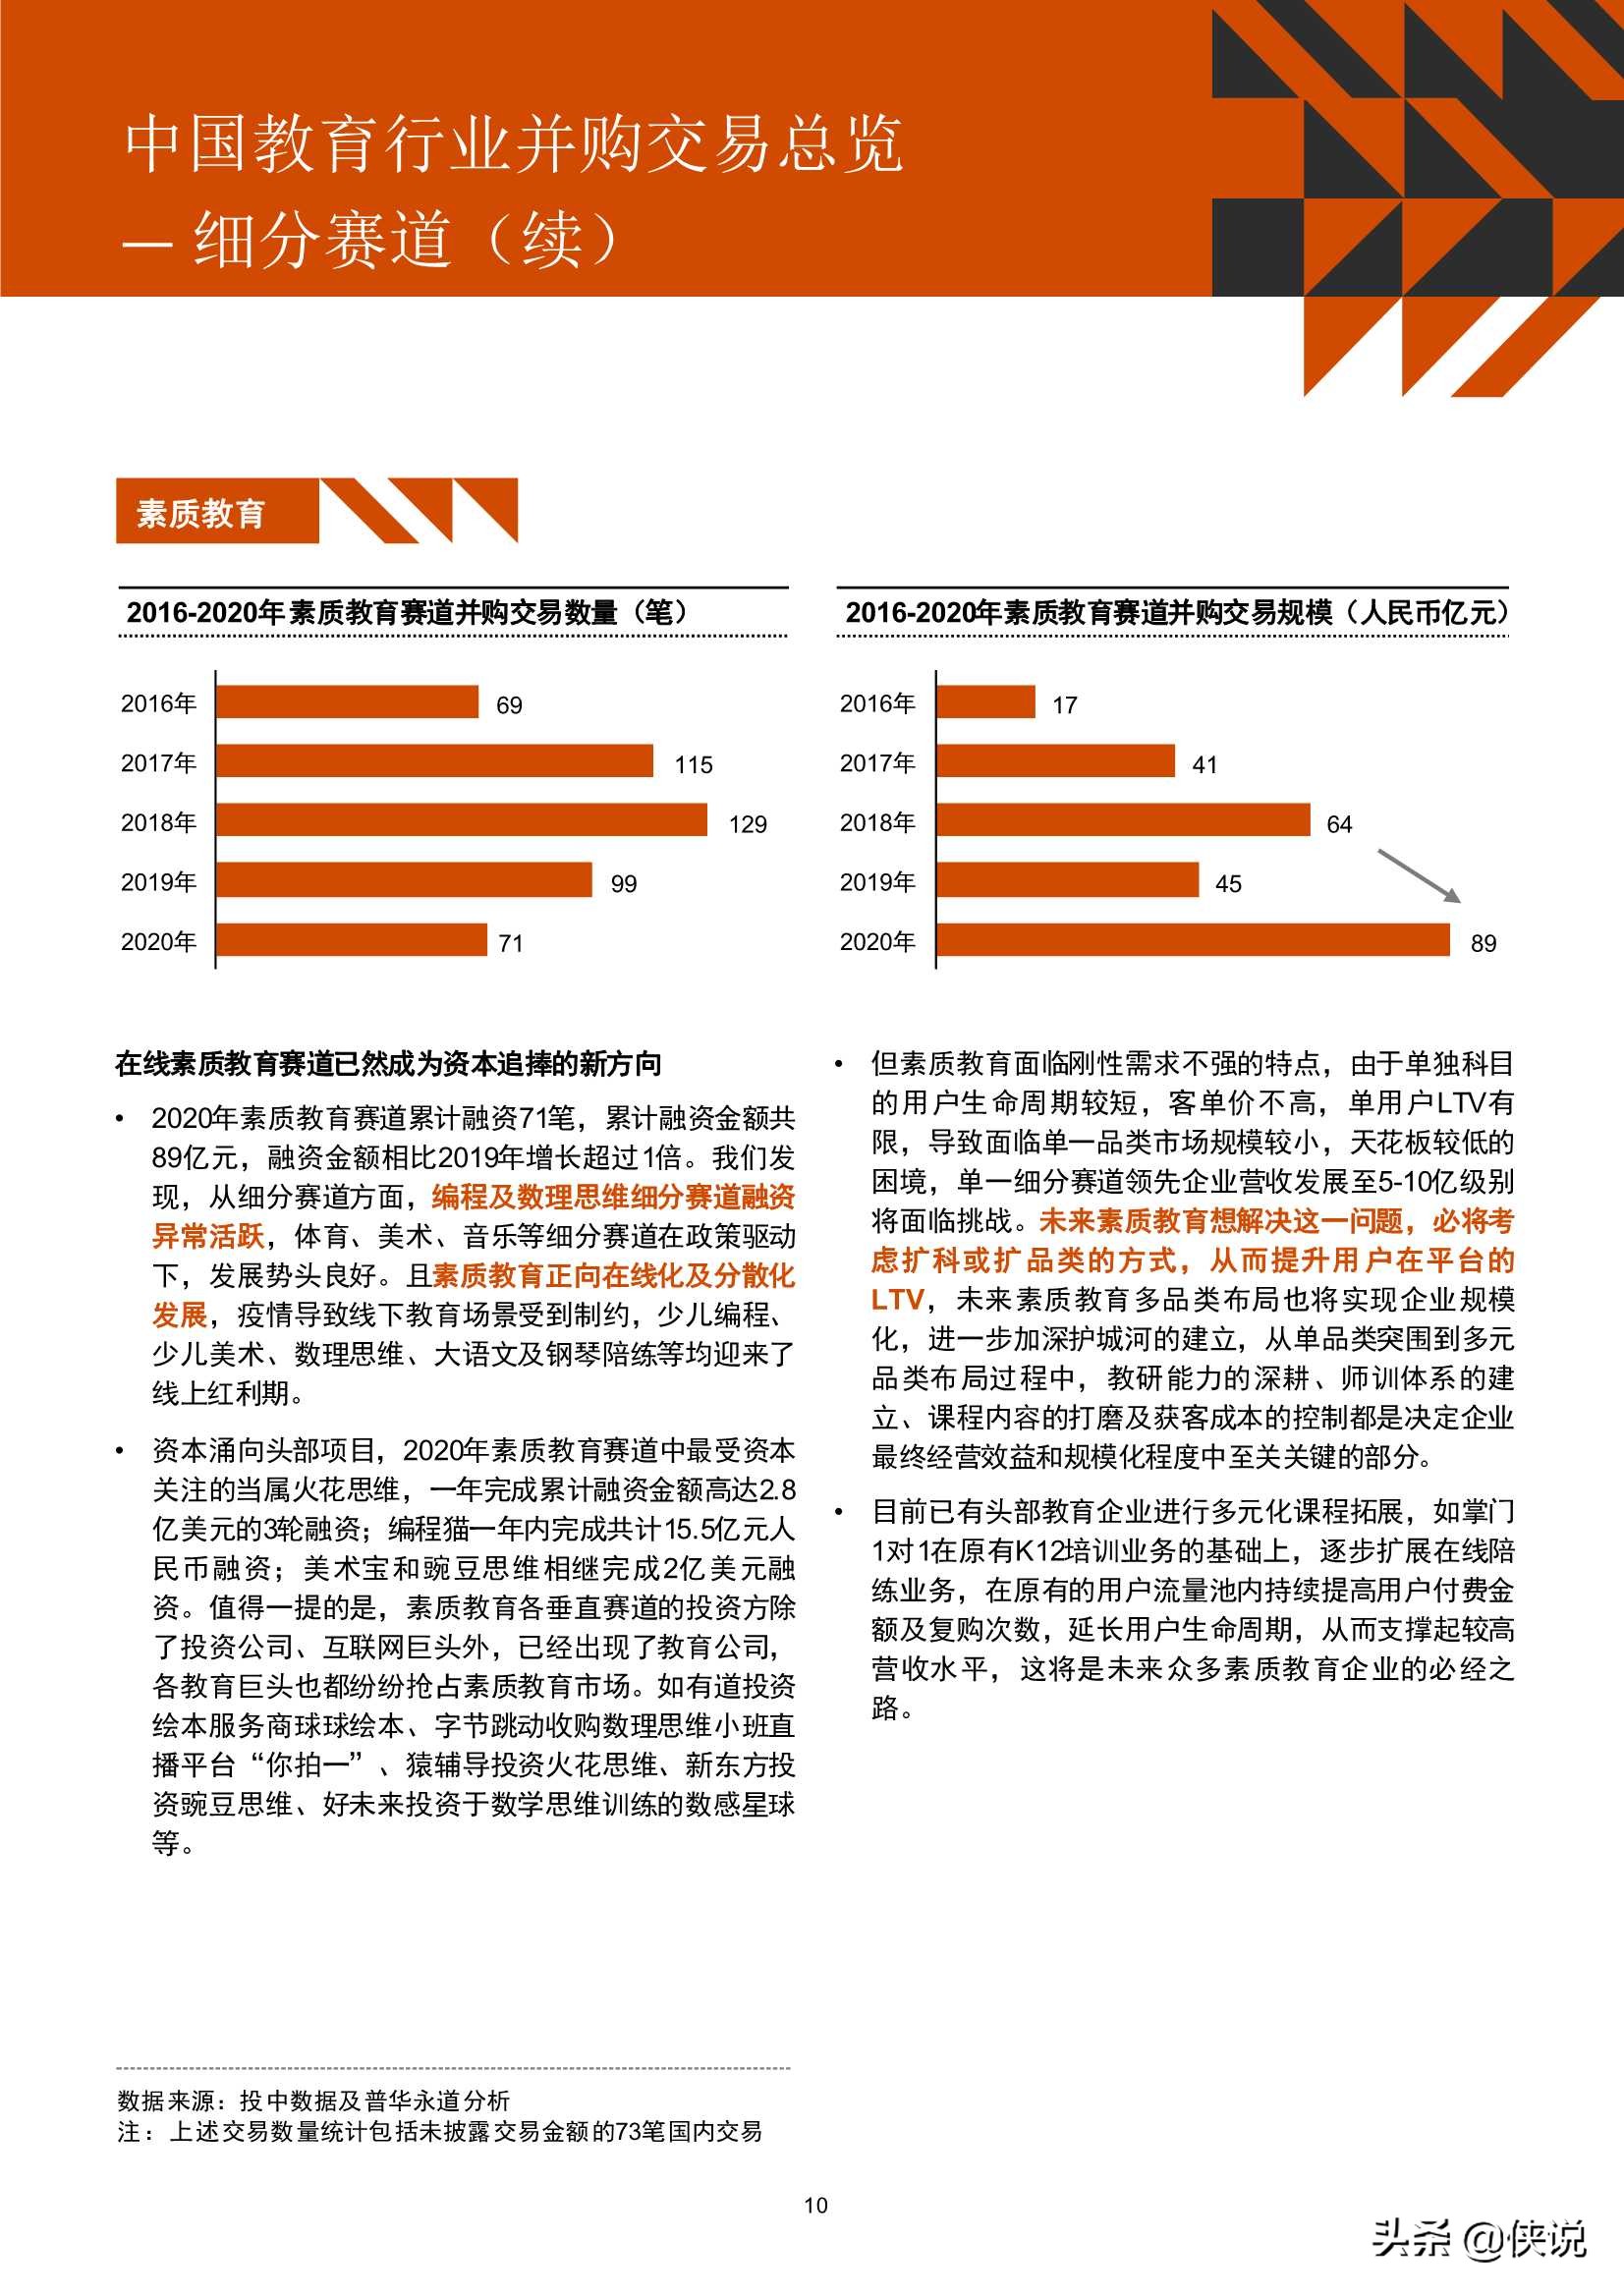 2016年-2020年中国教育行业并购活动回顾及趋势展望